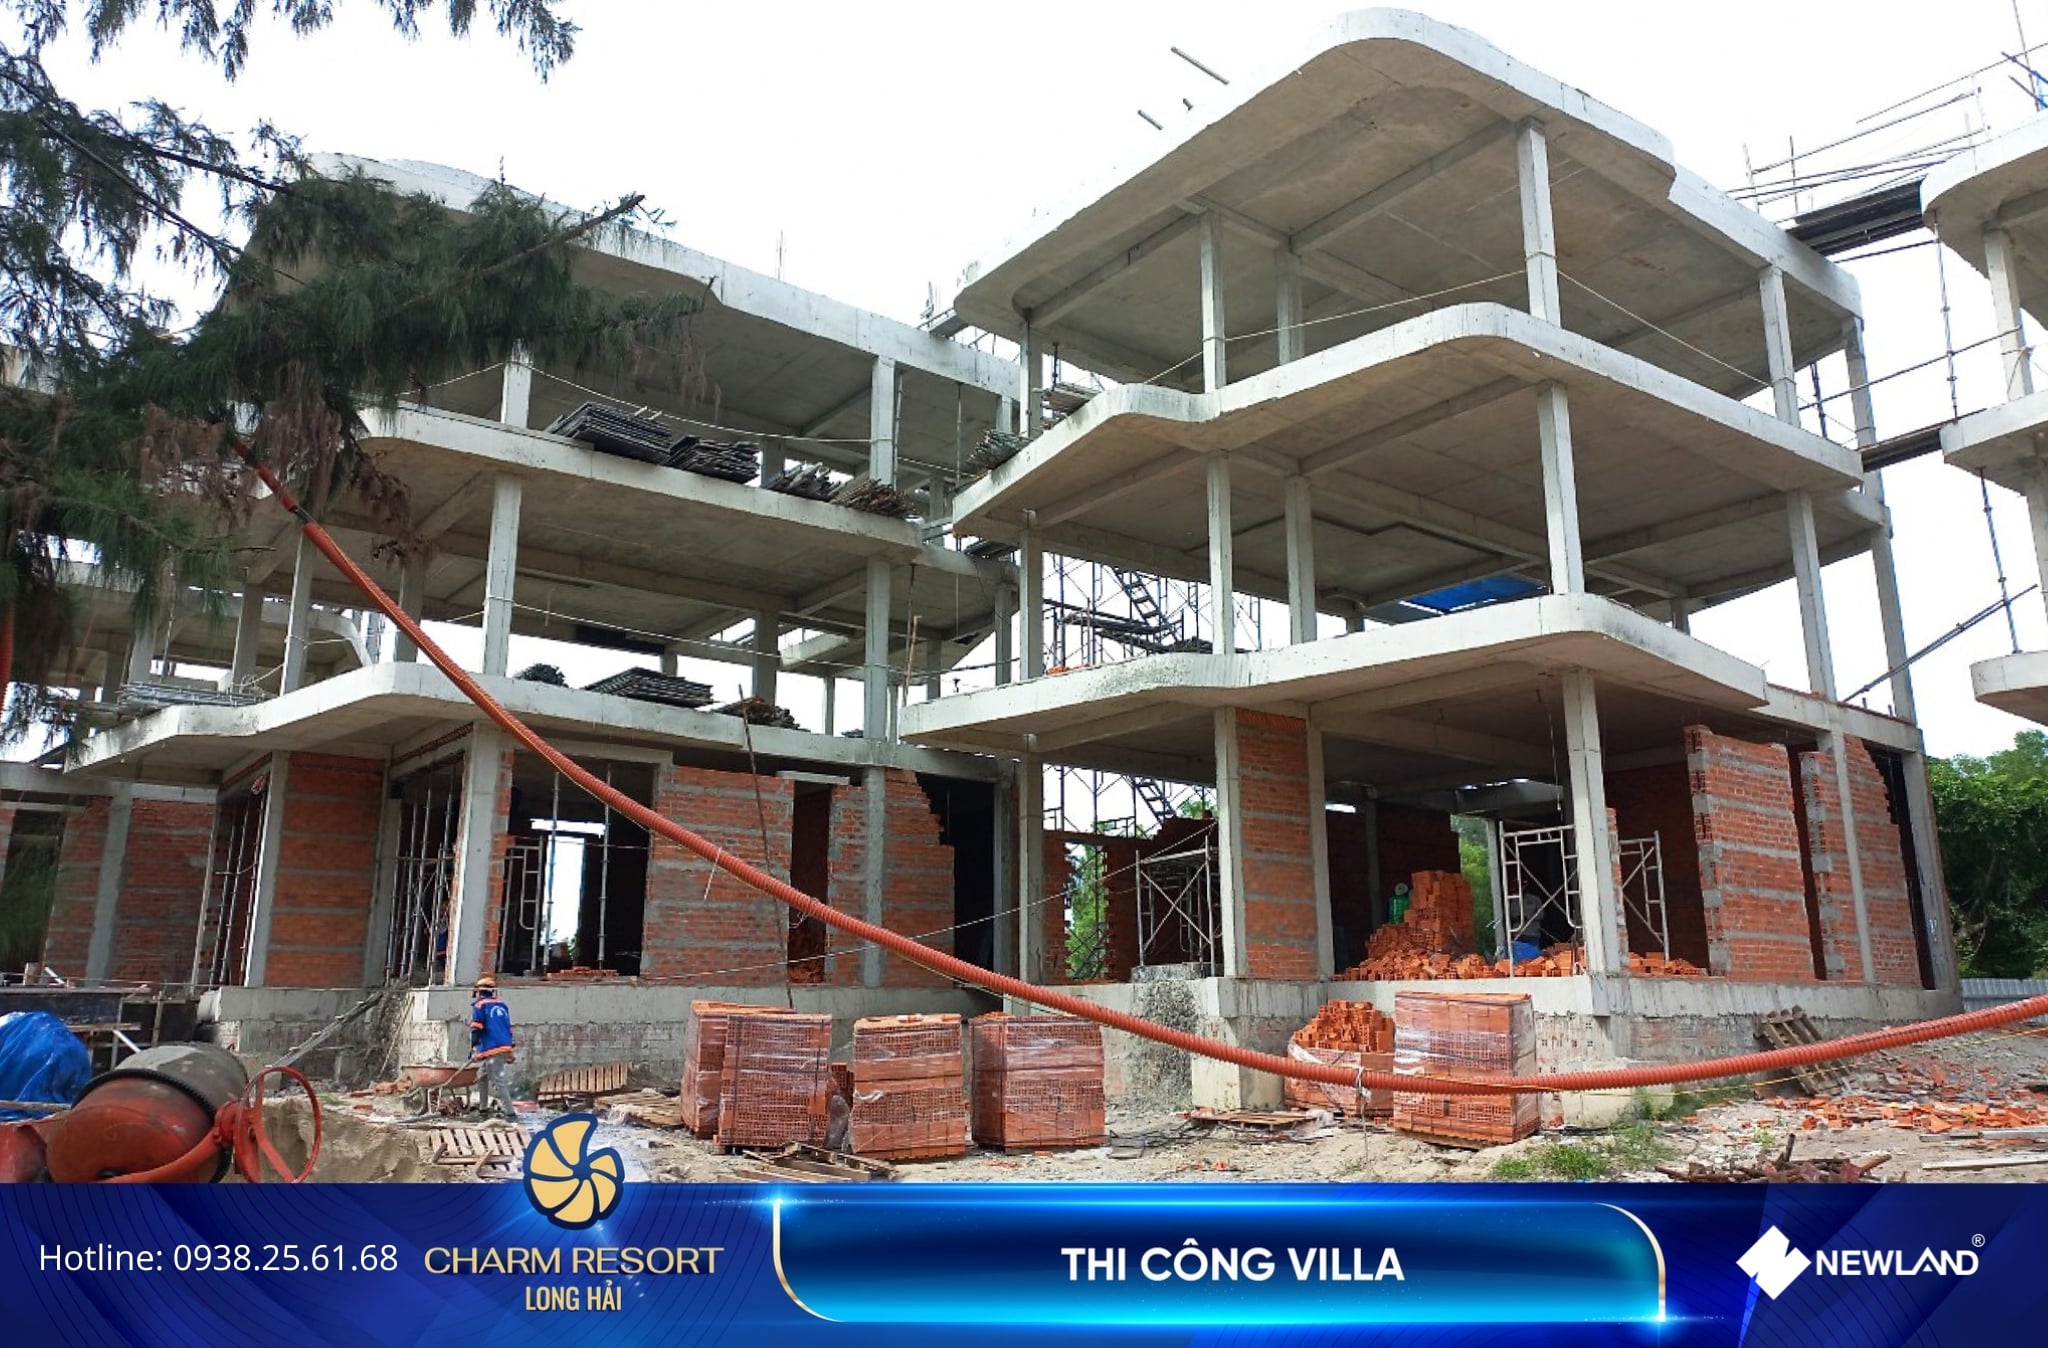 Khu villa đang được thi công cột tầng 3, sàn tầng 4, tường chắn đất và xây tường ở các căn. Đồng thời, đội ngũ đang tiến hành lắp dựng ván khuôn cầu thang bộ.